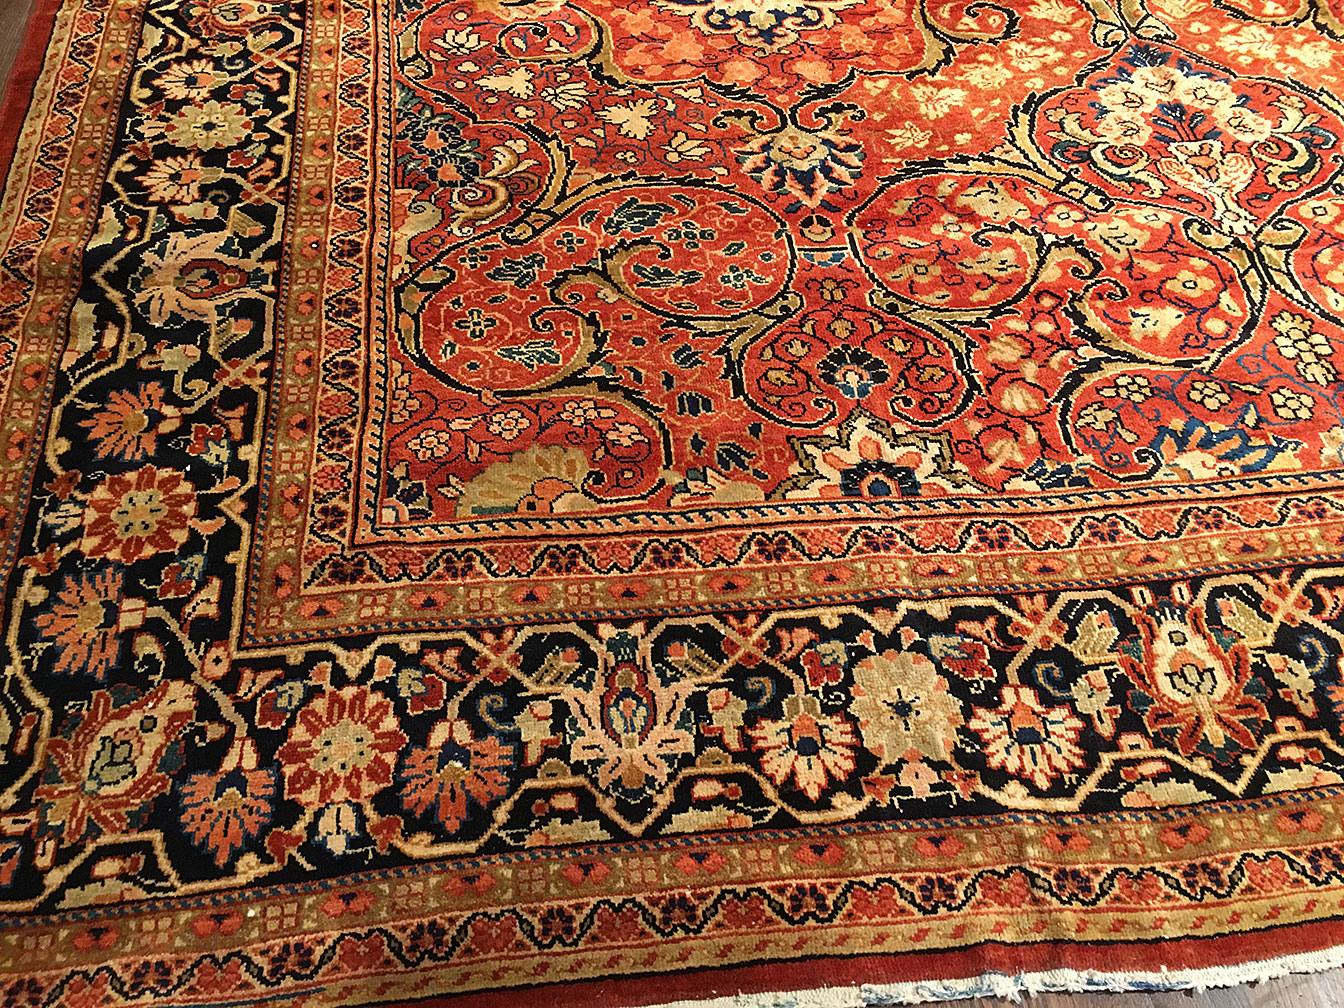 Antique mahal Carpet - # 51389